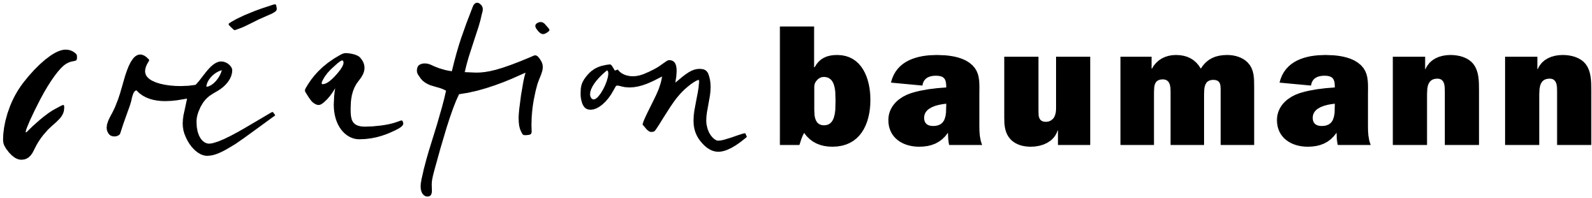 Logo creation Baumann